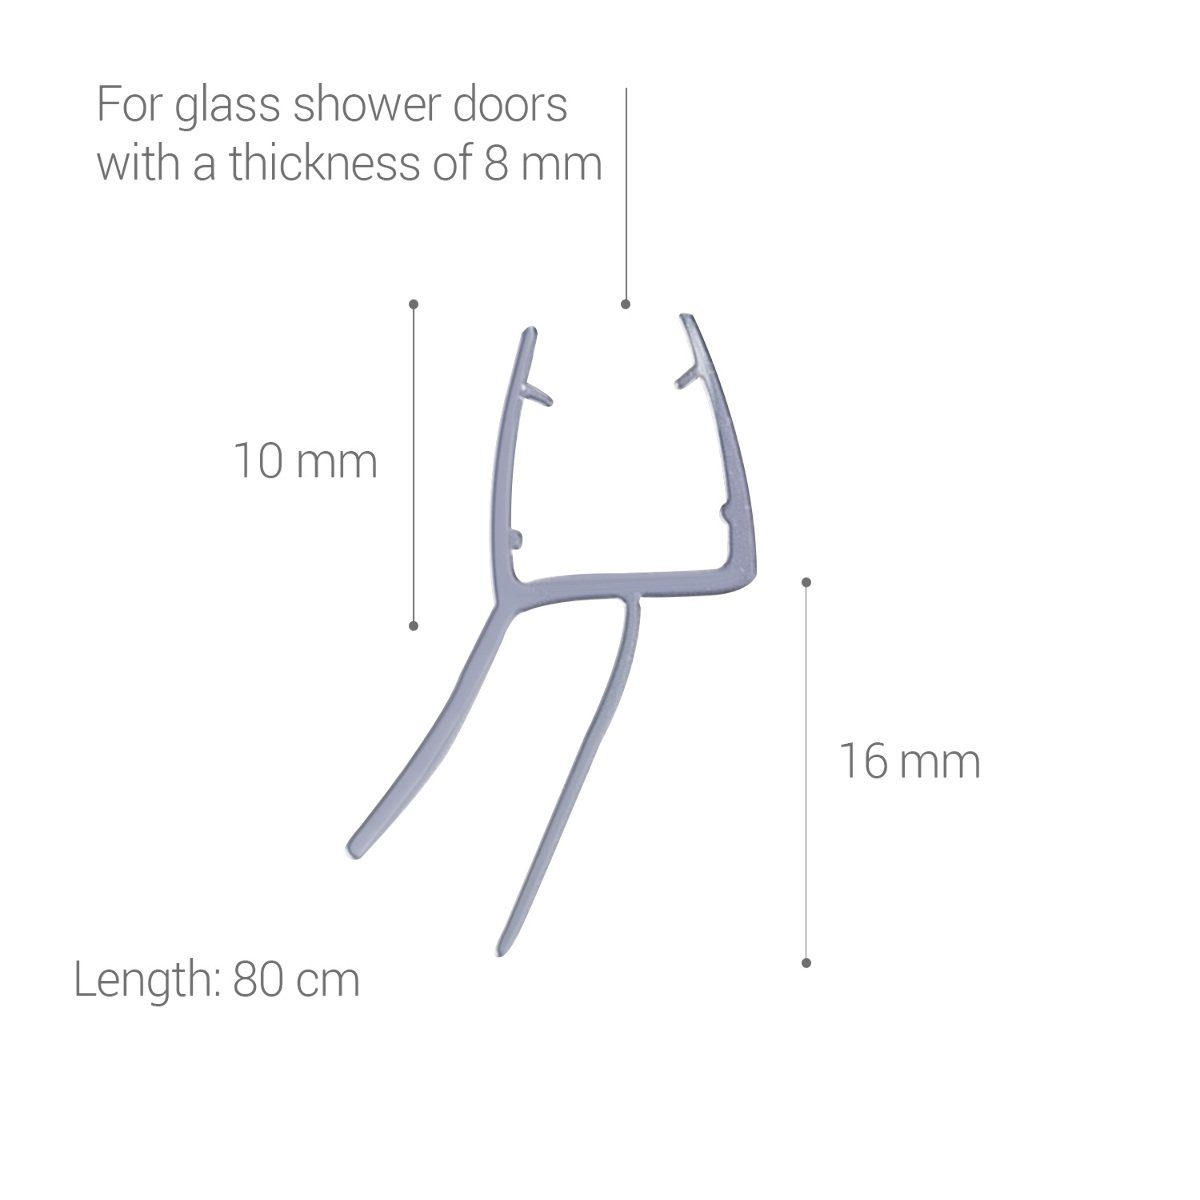 Schwallschutz Duschdichtung Duschkabine 45° 8mm Glas Duschtür Dichtung 80cm 